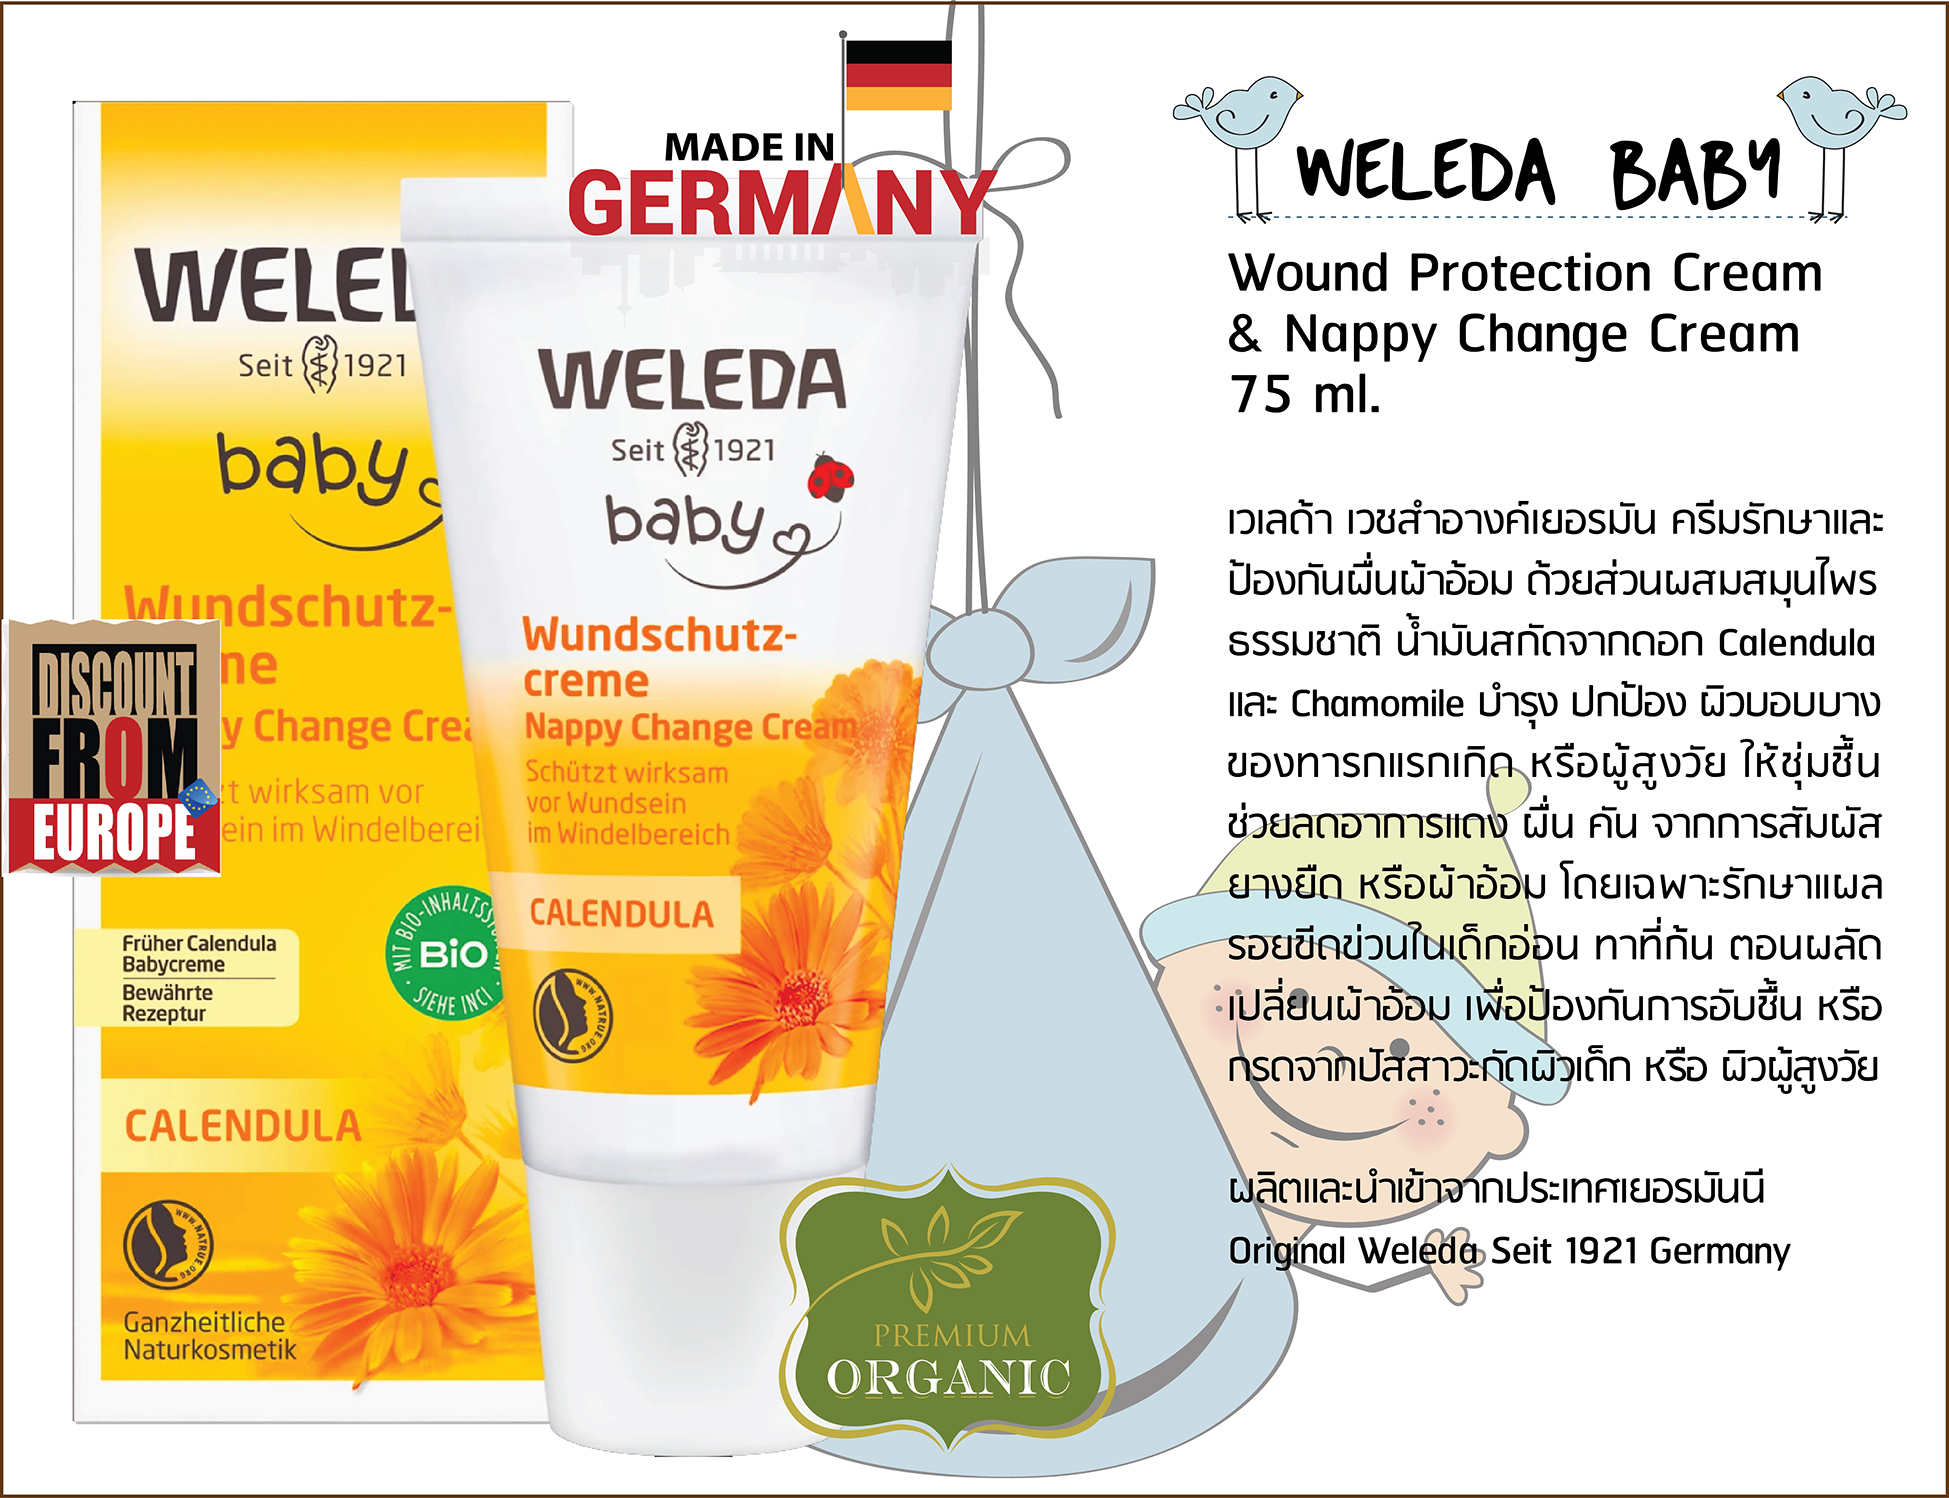 Original Weleda Baby Wound Protection & Nappy Change Cream 75 ml. เวเรด้า ครีมปกป้องผื่นแผลจากผ้าอ้อม หรือปัสสาวะ ใช้ได้ตั้งแต่ทารก-ผู้สูงวัย 30 มล. นำเข้าจากเยอรมัน